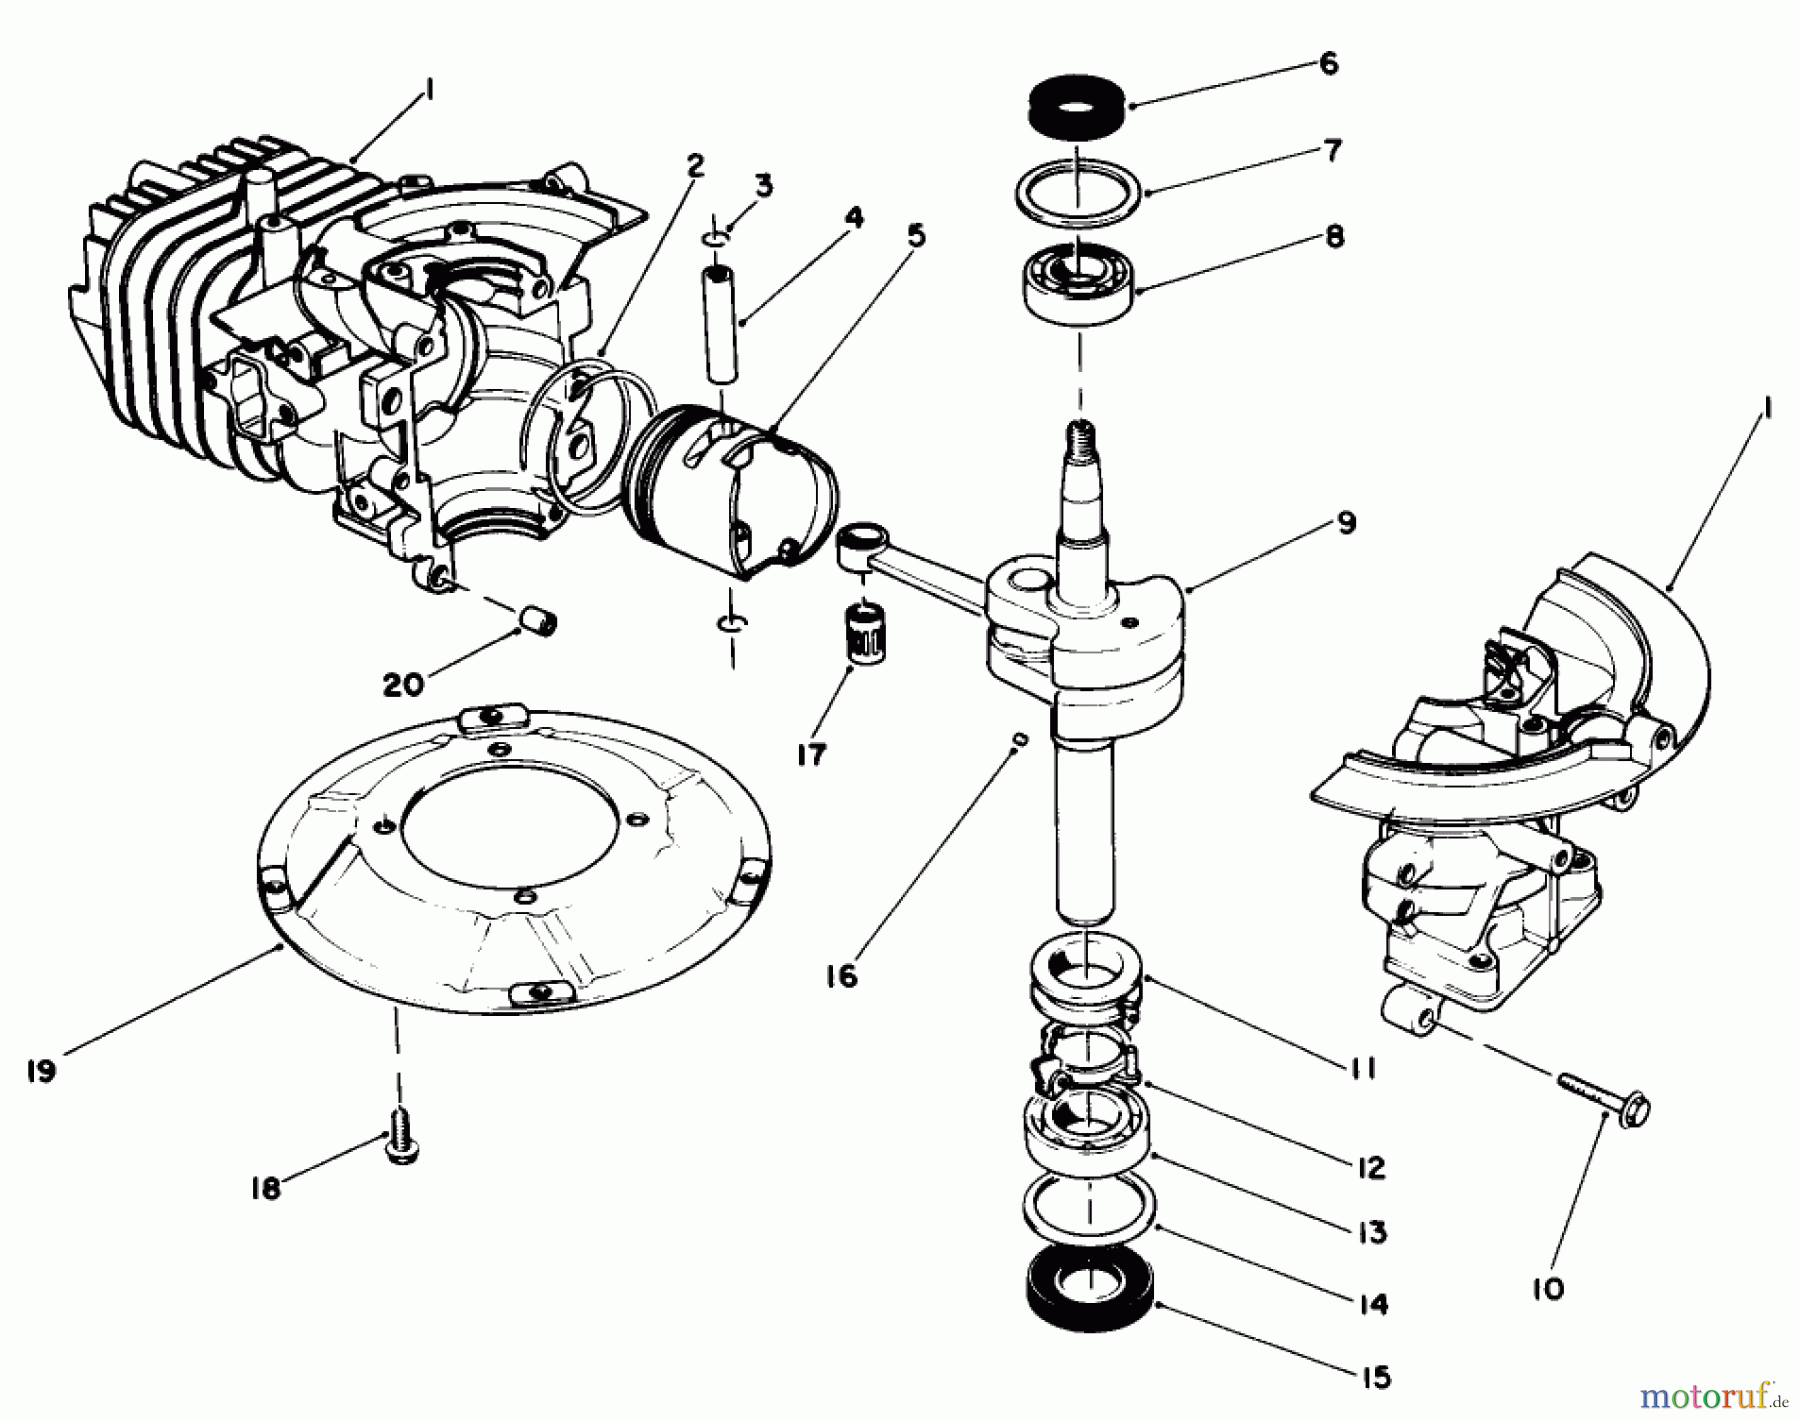  Toro Neu Mowers, Walk-Behind Seite 2 22025 - Toro Lawnmower, 1988 (8000001-8999999) ENGINE ASSEMBLY MODEL NO. 47PH7 #1